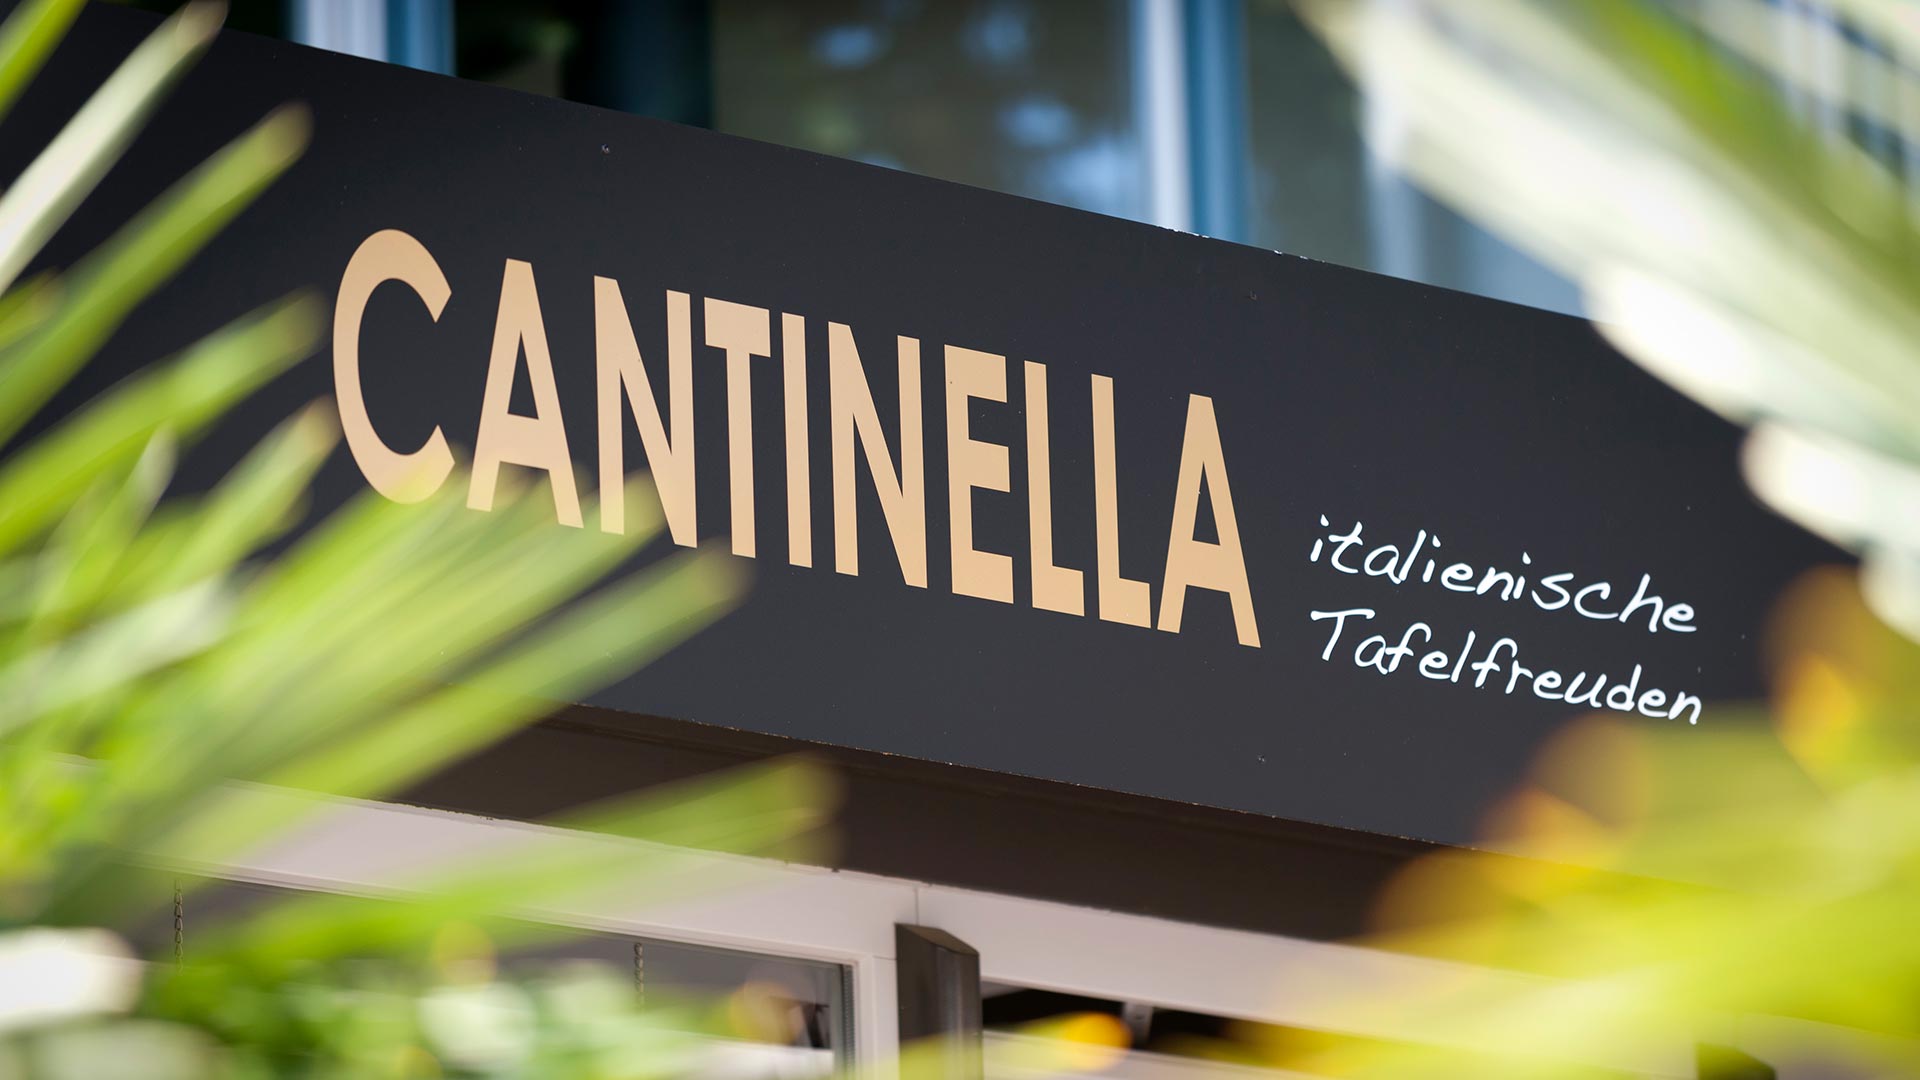 Cantinella Restaurant